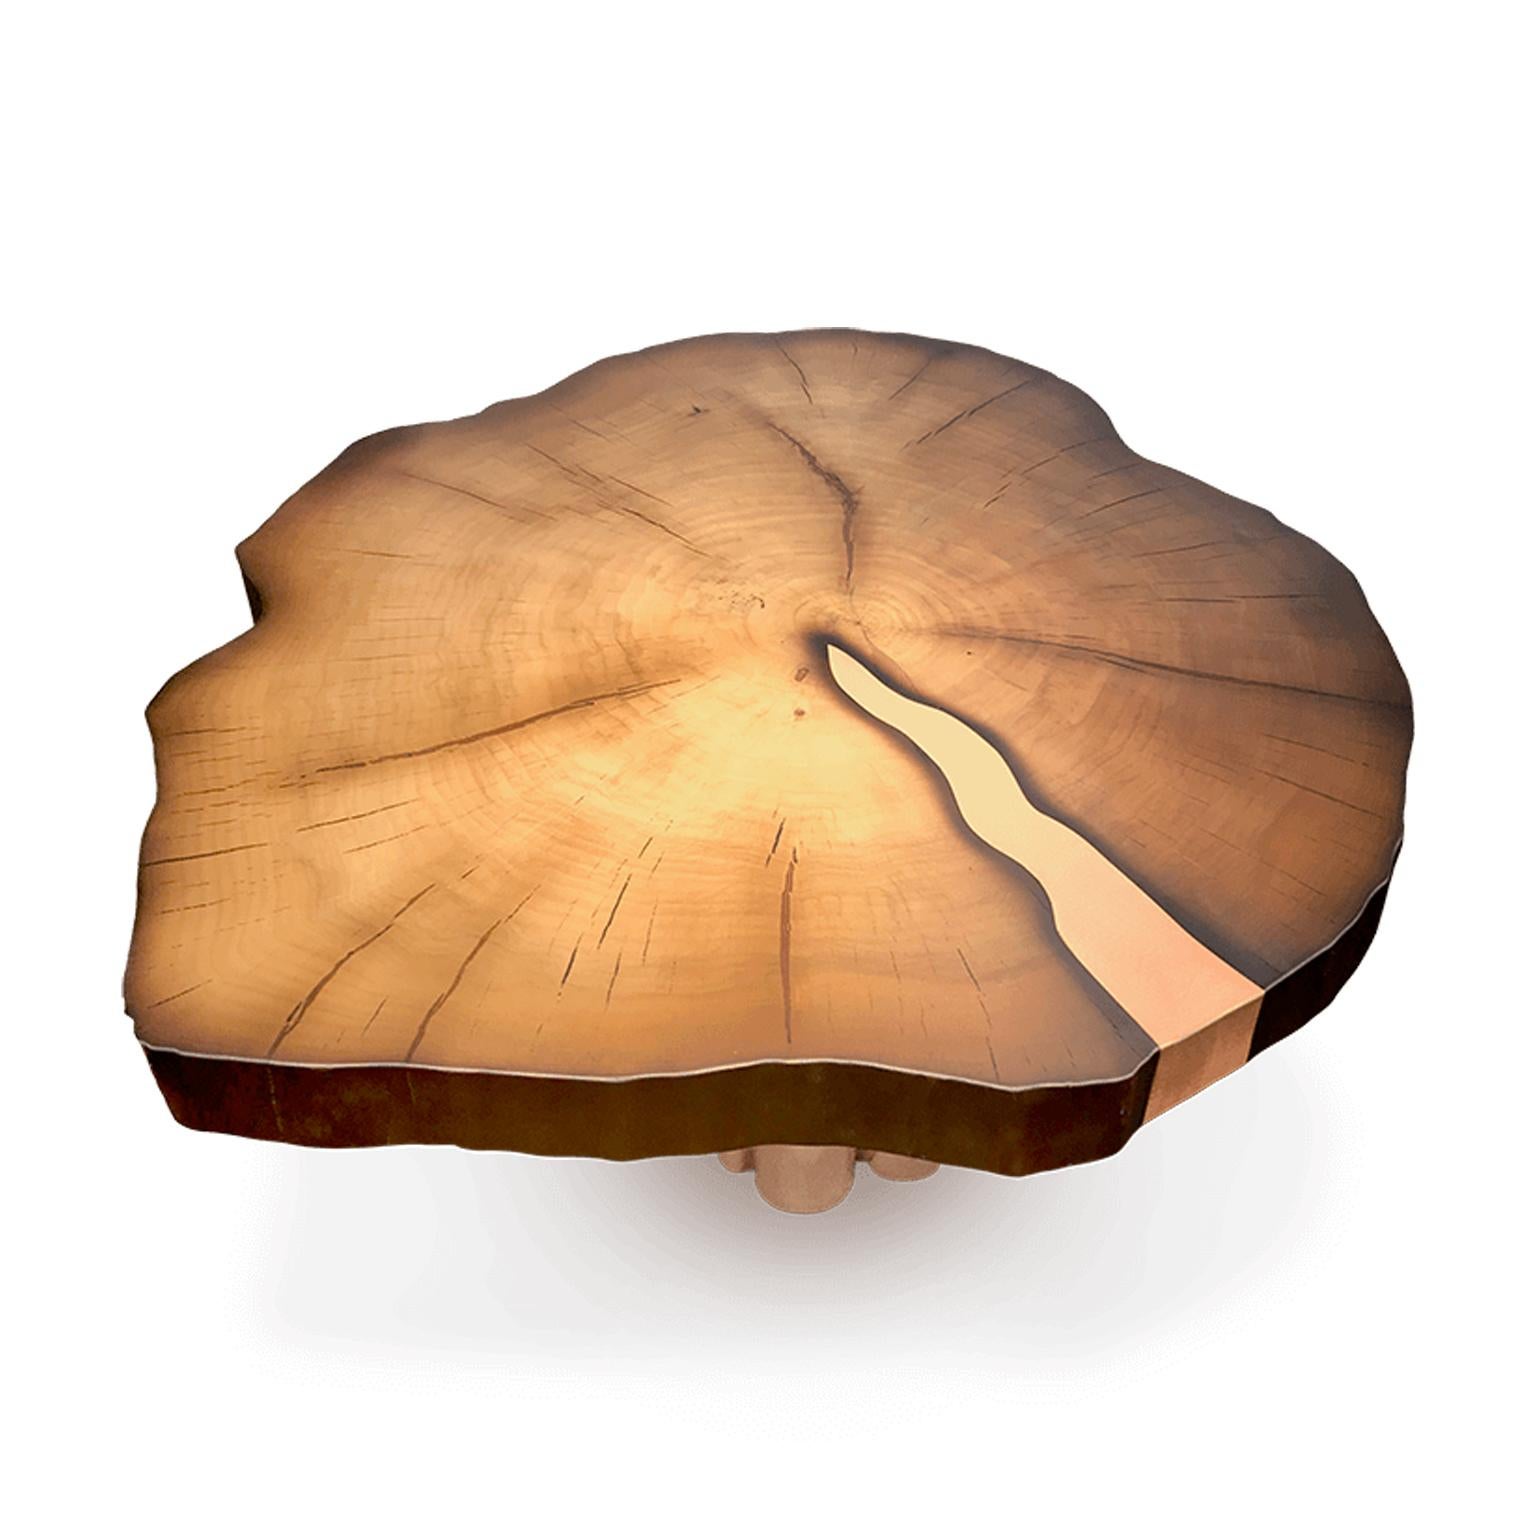 Dieser luxuriöse Couchtisch Organ kombiniert edles Holz mit glänzenden Kupferbeinen. Die geölte Oberfläche fühlt sich herrlich glatt an und sieht fantastisch aus. Eine Kupfereinlage wird sorgfältig in ein altes Holz eingebettet. Dieser Tisch passt